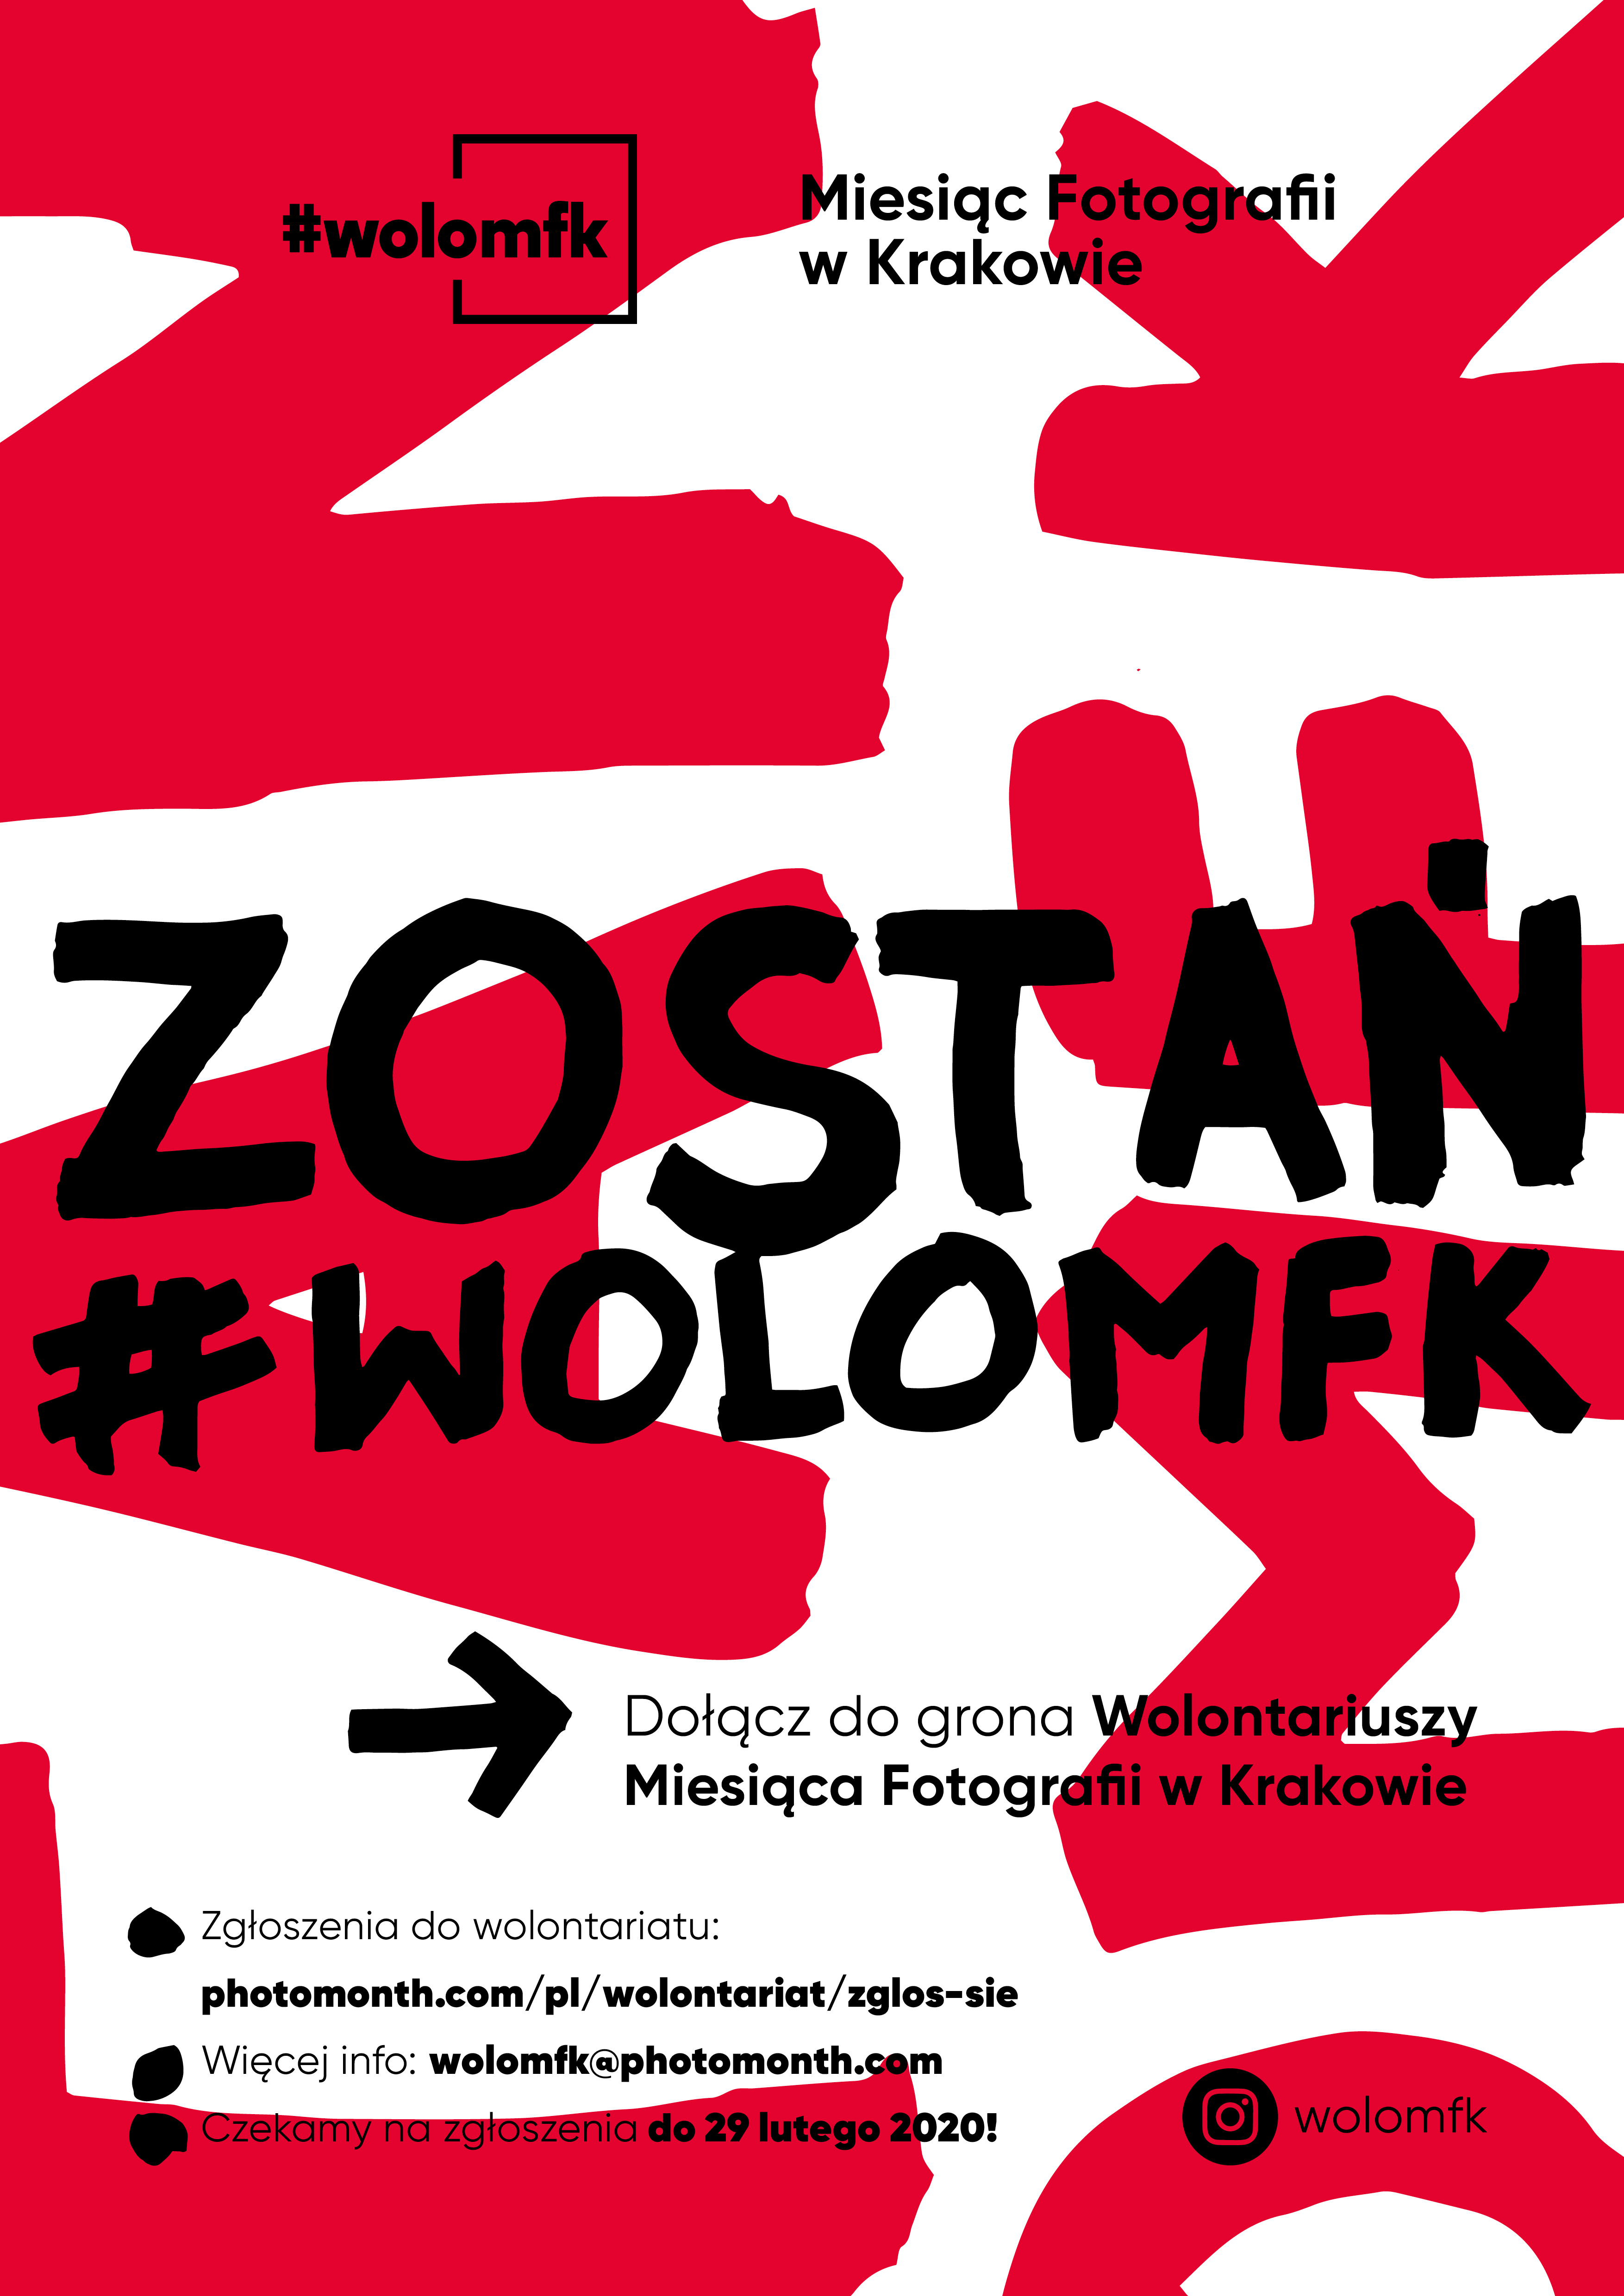 Grafika przedstawia plakat festiwalu Miesiąc Fotografii w Krakowie. Plakat w kolorze czerwono-białym, na środku duży czarny napis #ZOSTAŃWOLOMKF.